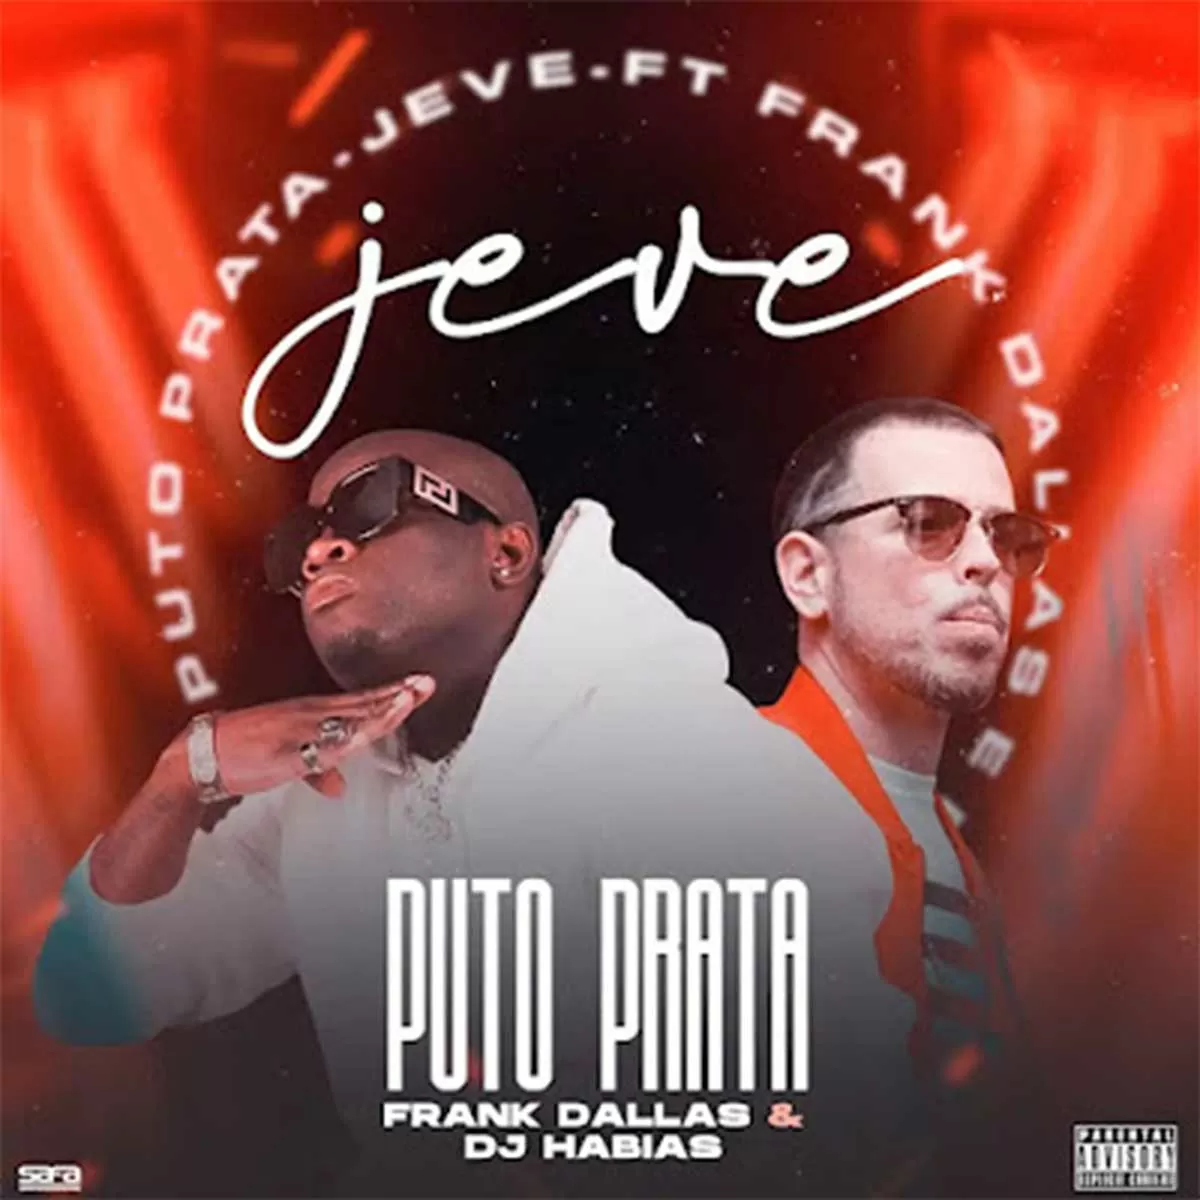 Puto Prata – Je-Ve (feat. Frank Dallas & Dj Habias)